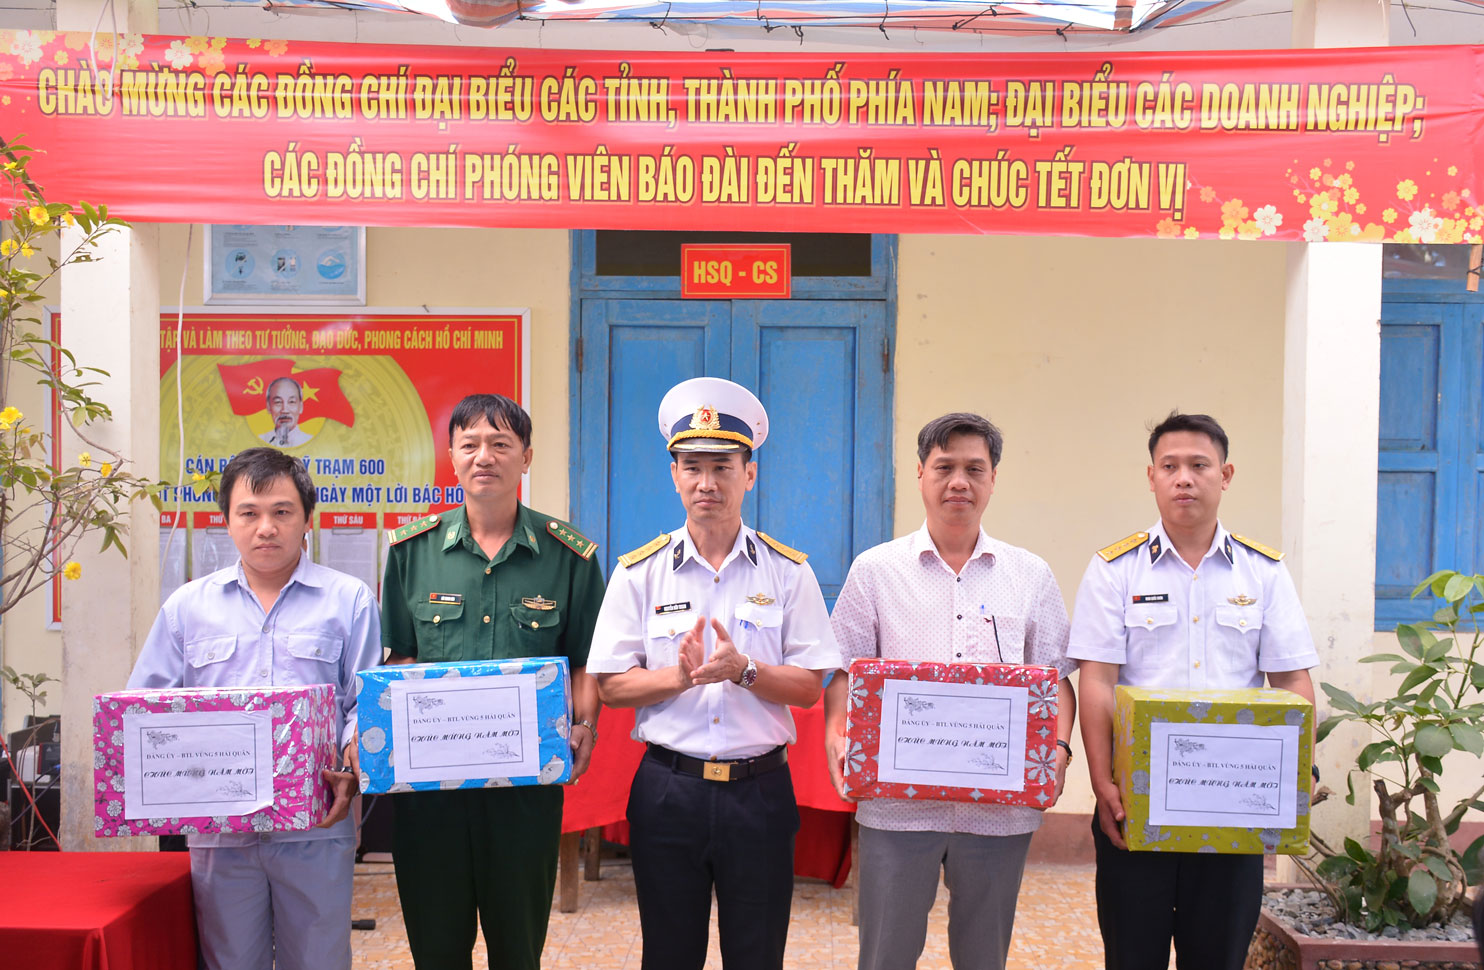 Phó Chính ủy Vùng 5 Hải quân - Nguyễn Hữu Thoan tặng quà các lực lượng trên đảo